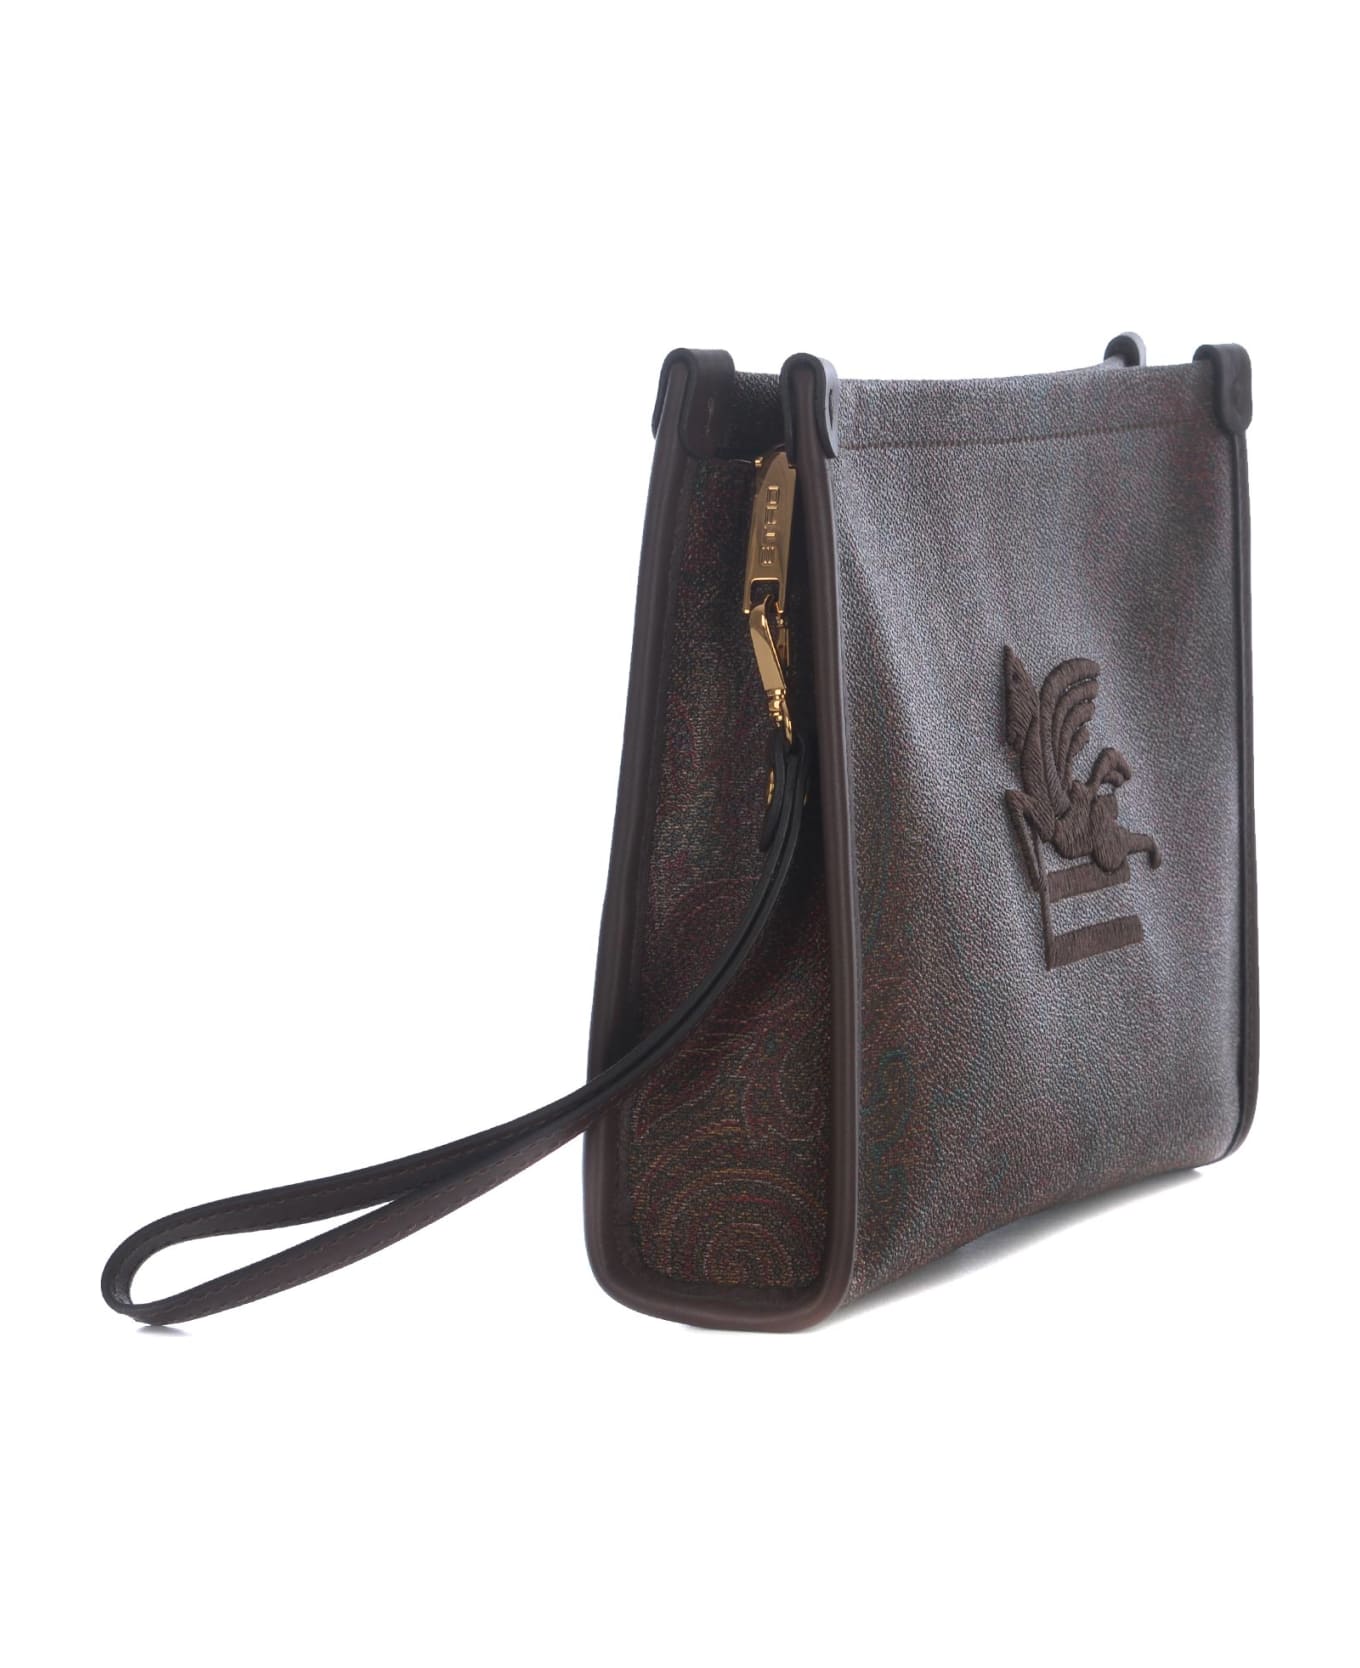 Etro Clutch Bag Etro "pegaso" Made Of Paisley Cotton - Paisley